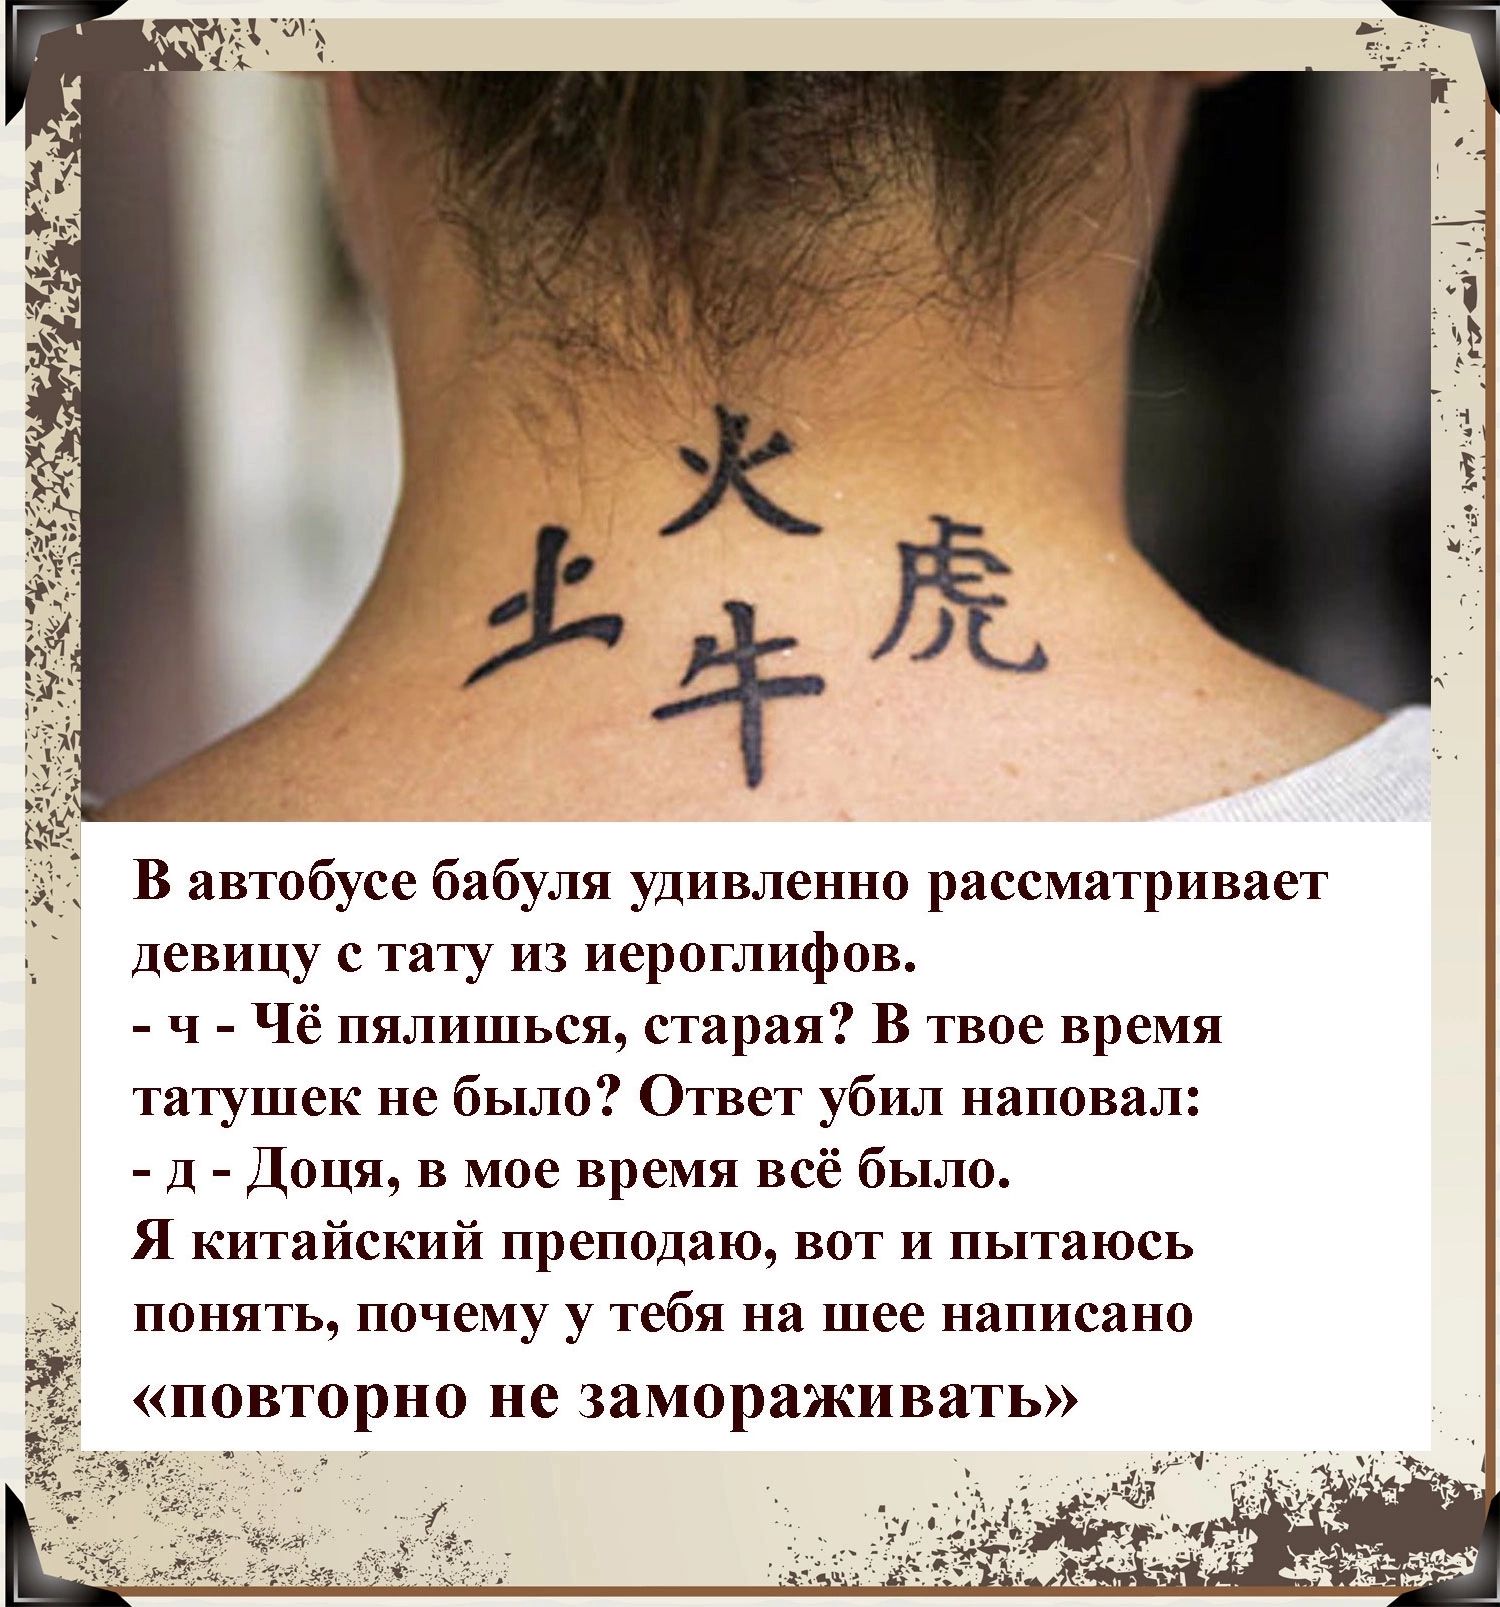 Fuga Tattoo, тату-салон, Варшавское шоссе, 9, стр. 28 — Яндекс Карты